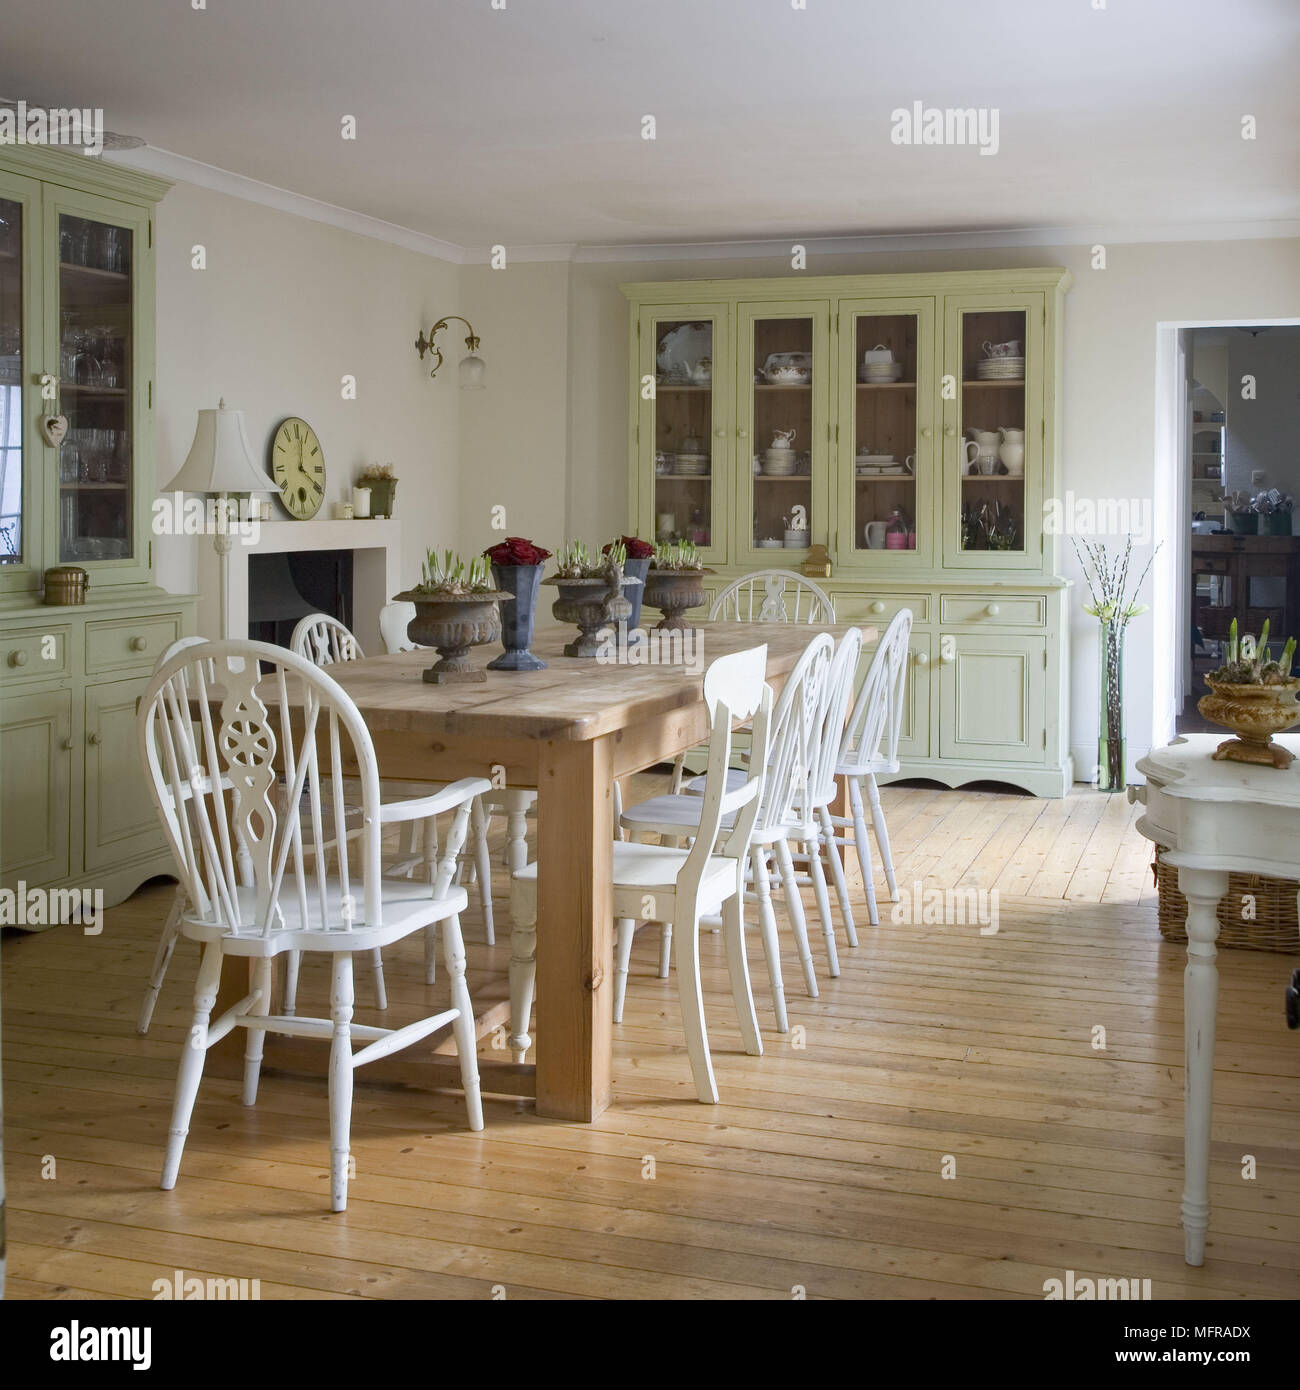 Table en bois et chaises peintes en blanc au centre de la salle à manger de style campagnard Banque D'Images